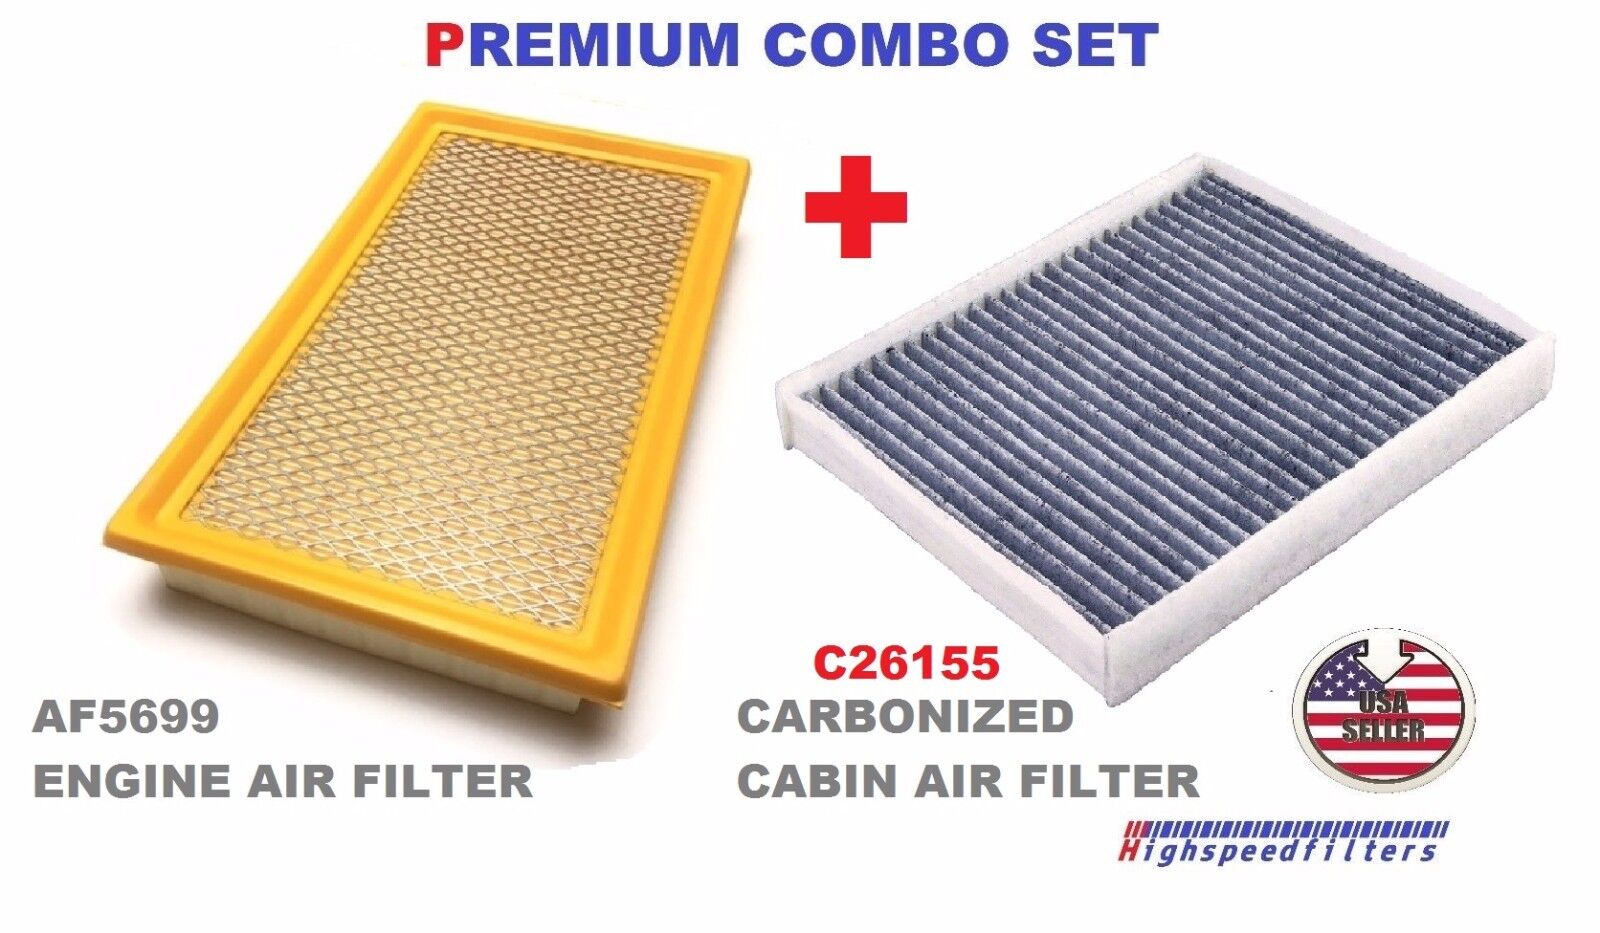 Air Filter CHARCOAL Cabin Air Filter for Explorer Flex Taurus MKS AF5699 C26155